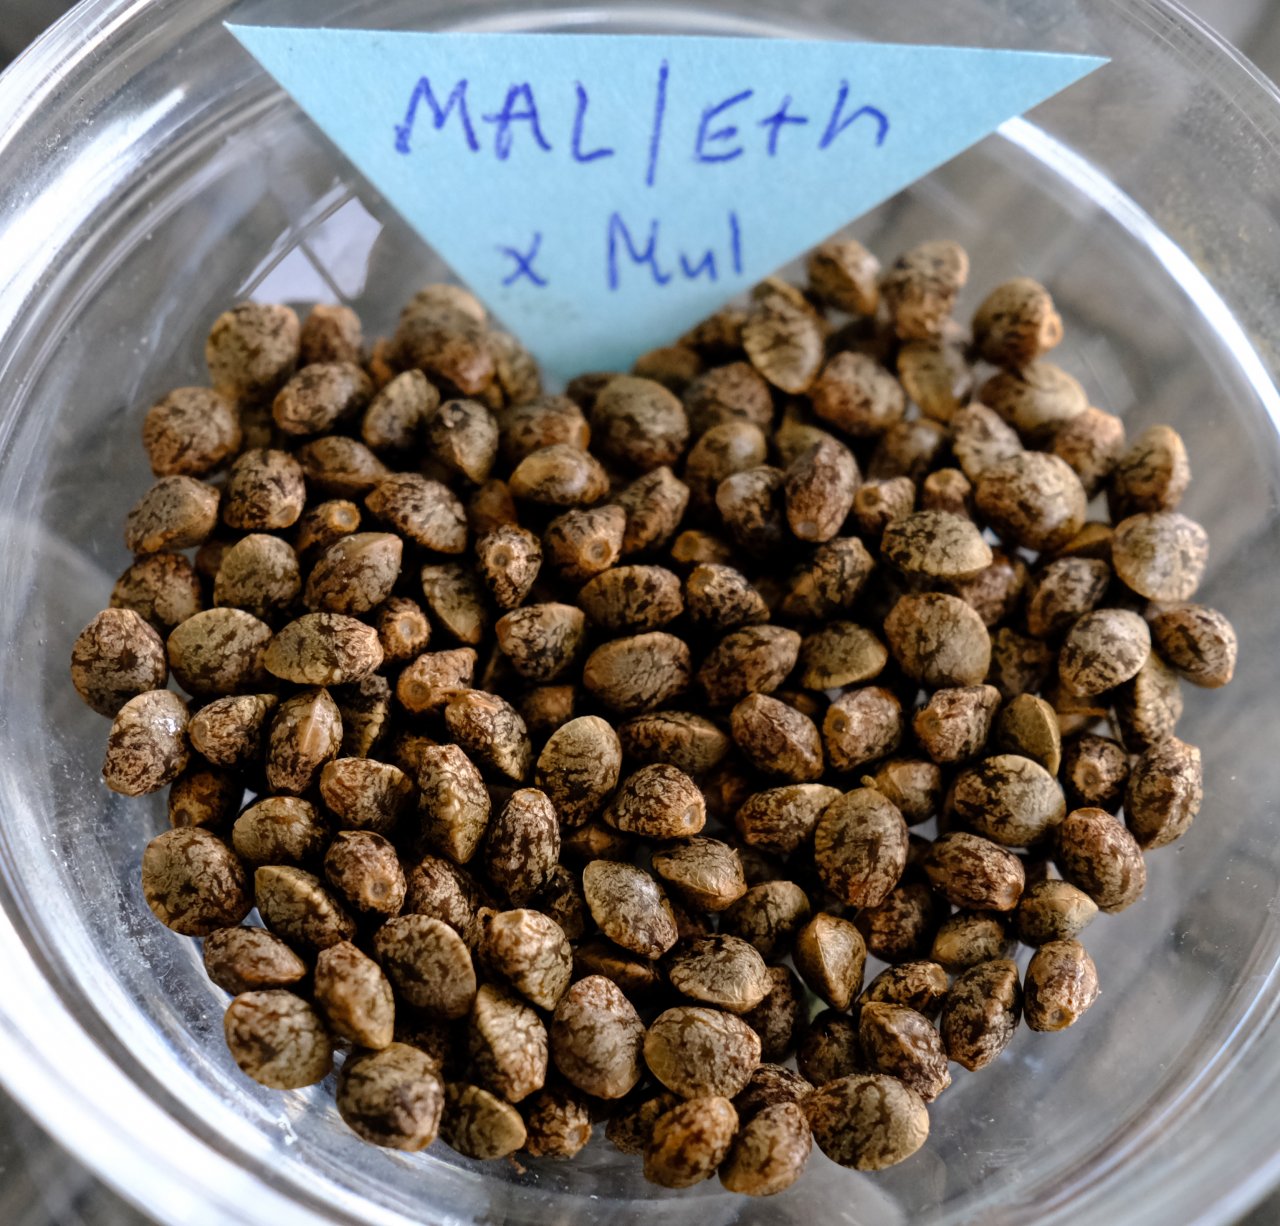 Malawi/Ethiopian x Mulanje seeds